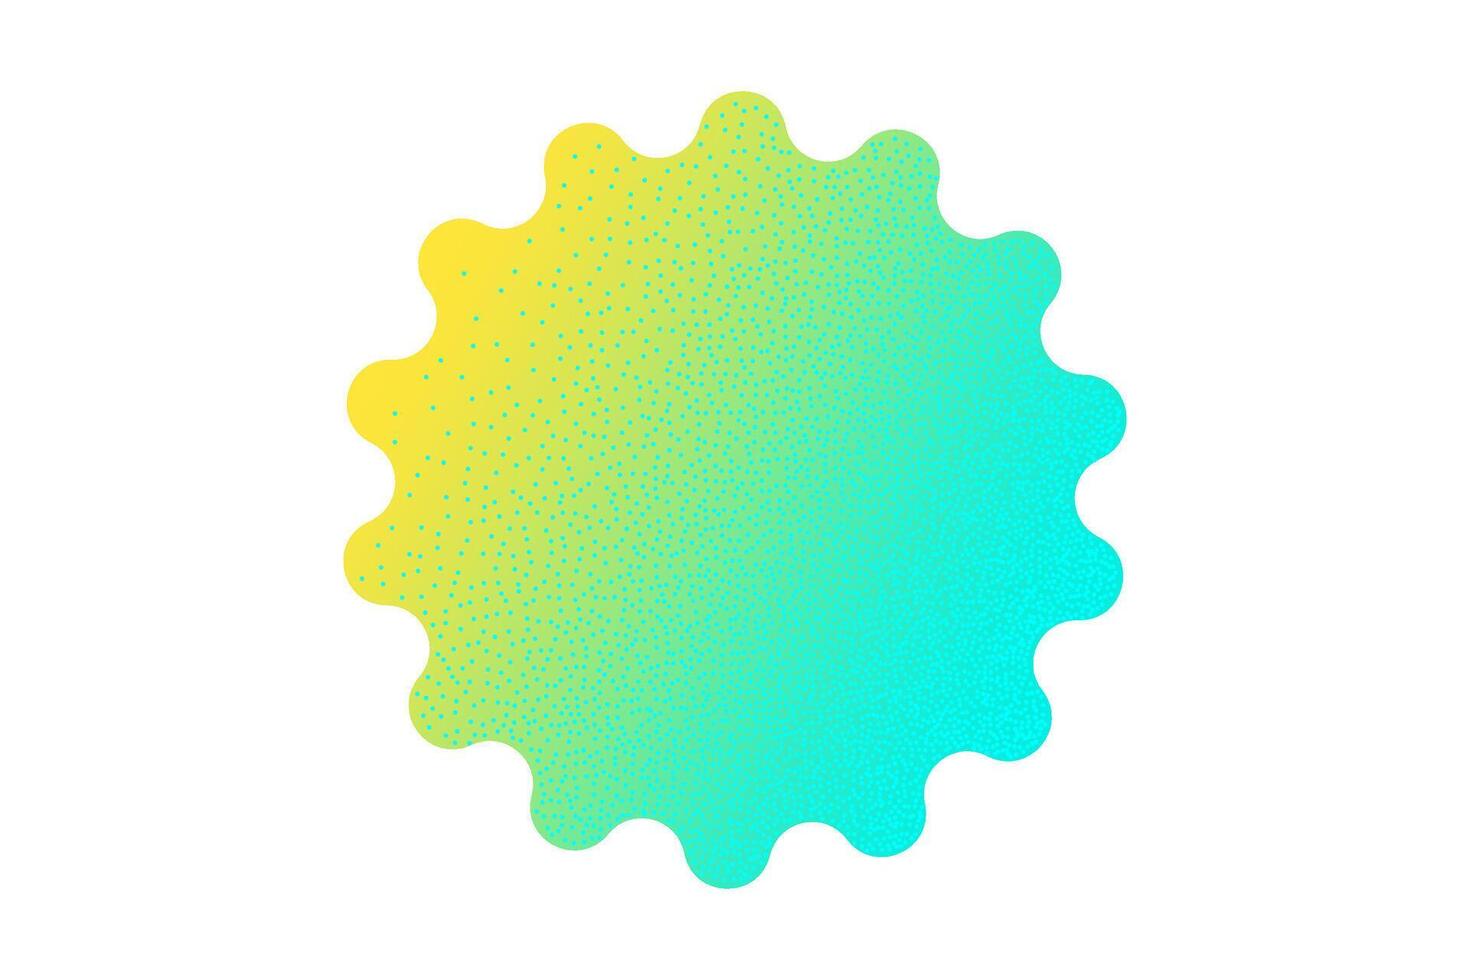 néon geométrico adesivo com pontilhado efeito isolado em branco fundo. gradiente desigual arredondado formas do brilhante cores dentro ano 2000 estilo, anos 90, Projeto modelo, brincar. amarelo e verde vibrante cores. vetor